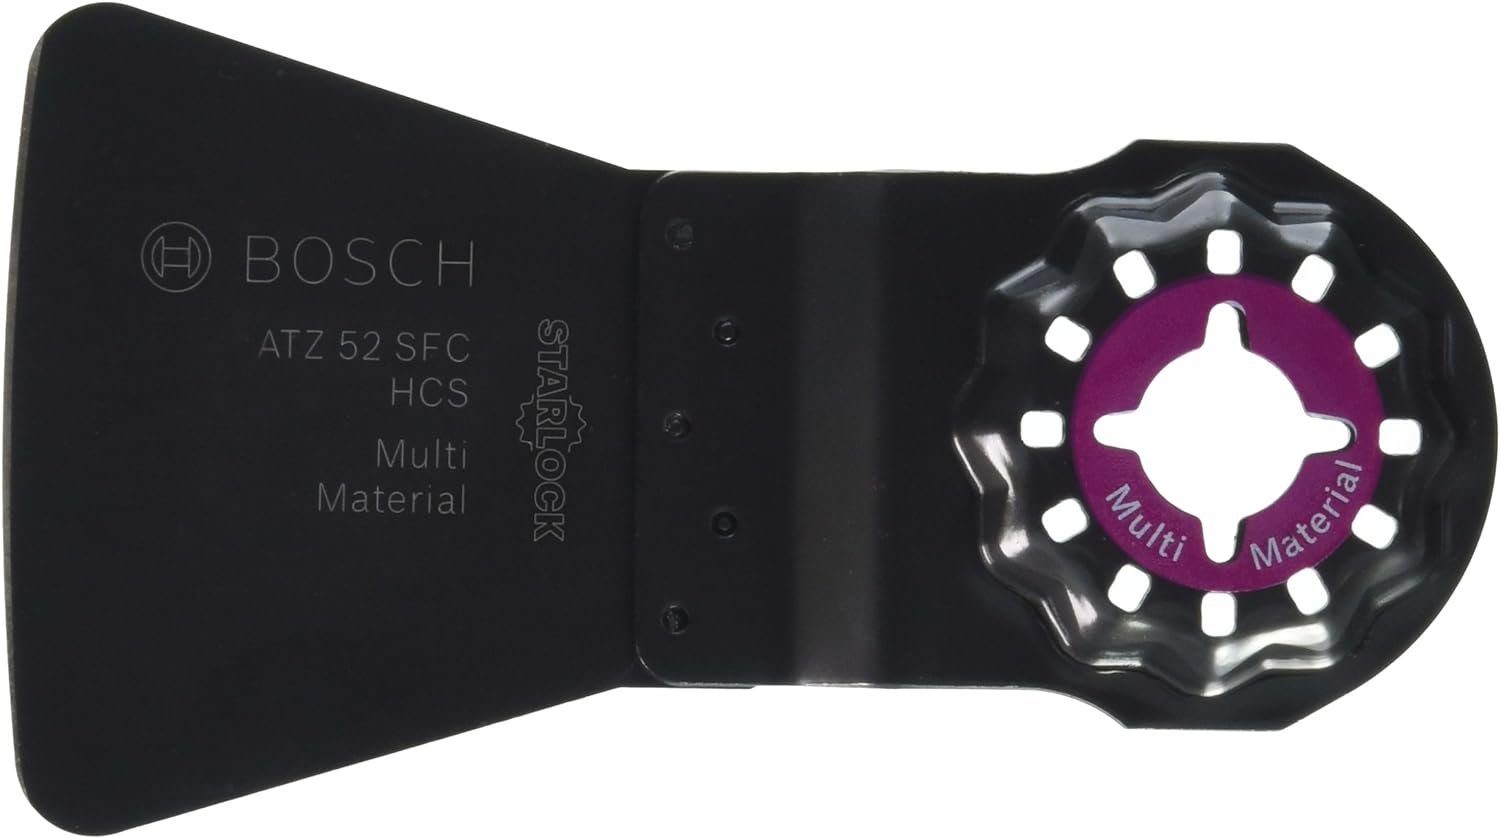 Starlock SFC, HCS mm x 38 BOSCH flexibel ATZ Bohrfutter 52 Bosch Schaber 52